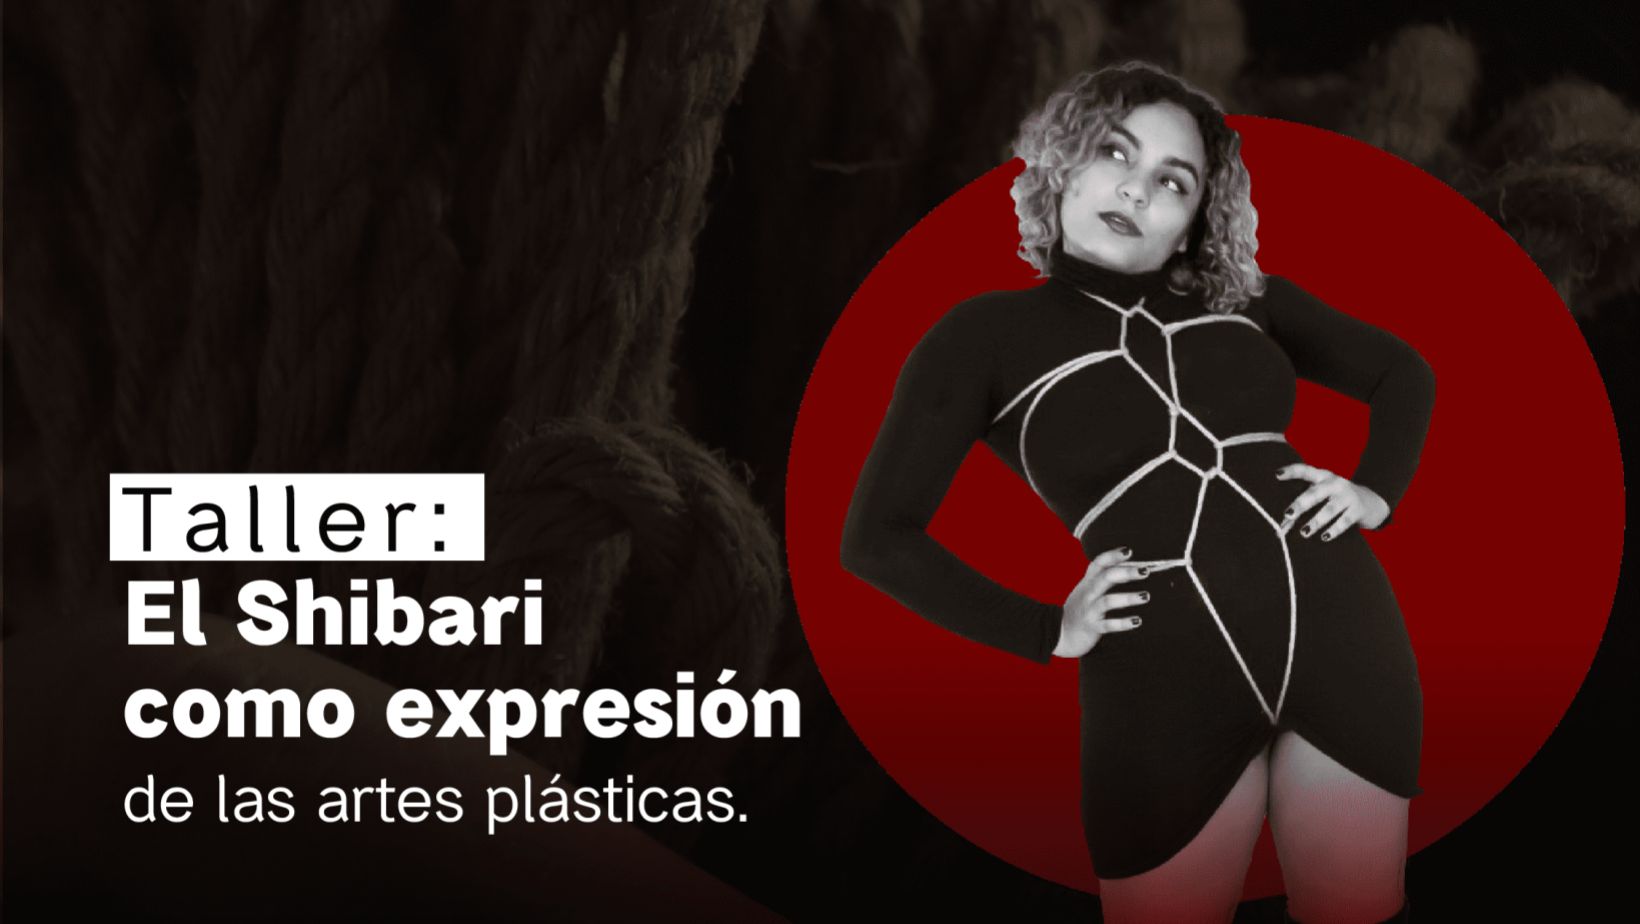 Taller: El Shibari como expresión de las artes plásticas